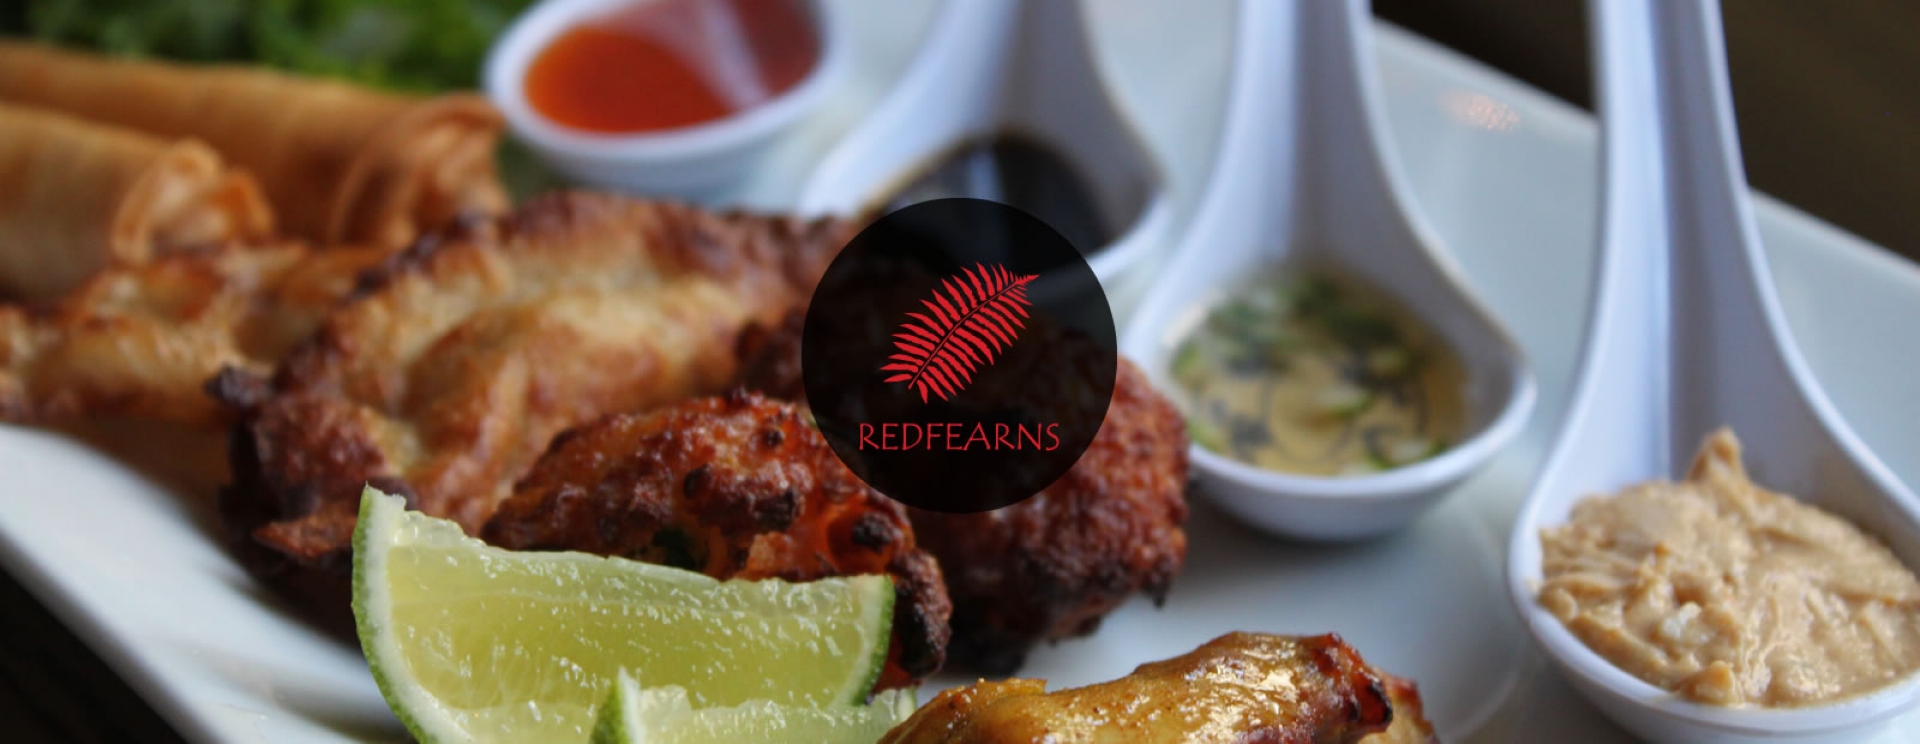 redfearns thai restaurant web design